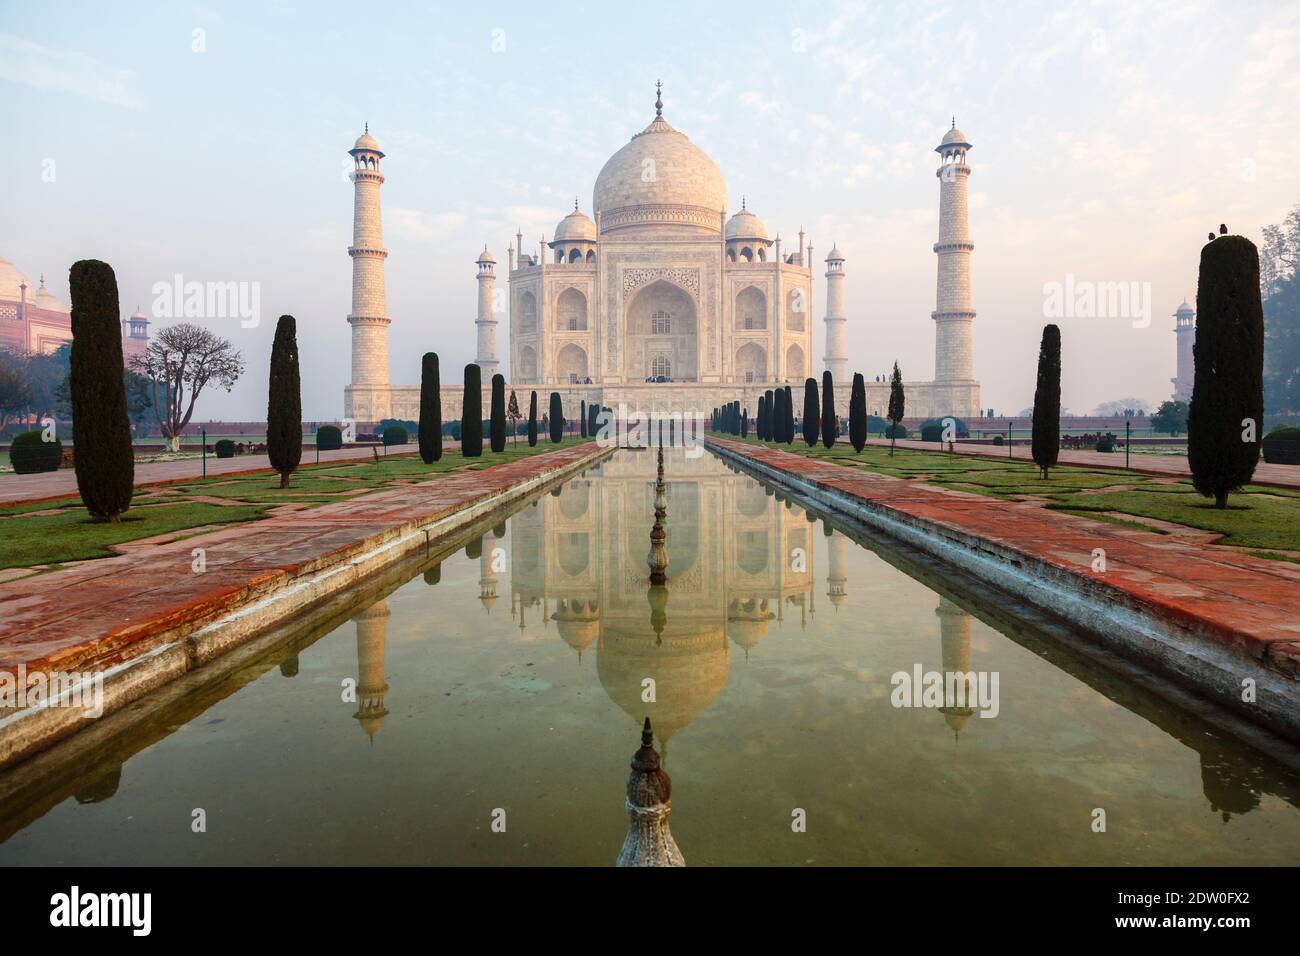 Vista del emblemático Taj Mahal, una tumba mausoleo de mármol blanco de Mumtaz Mahal, en la luz de la mañana con reflexión, Agra, estado indio de Uttar Pradesh Foto de stock